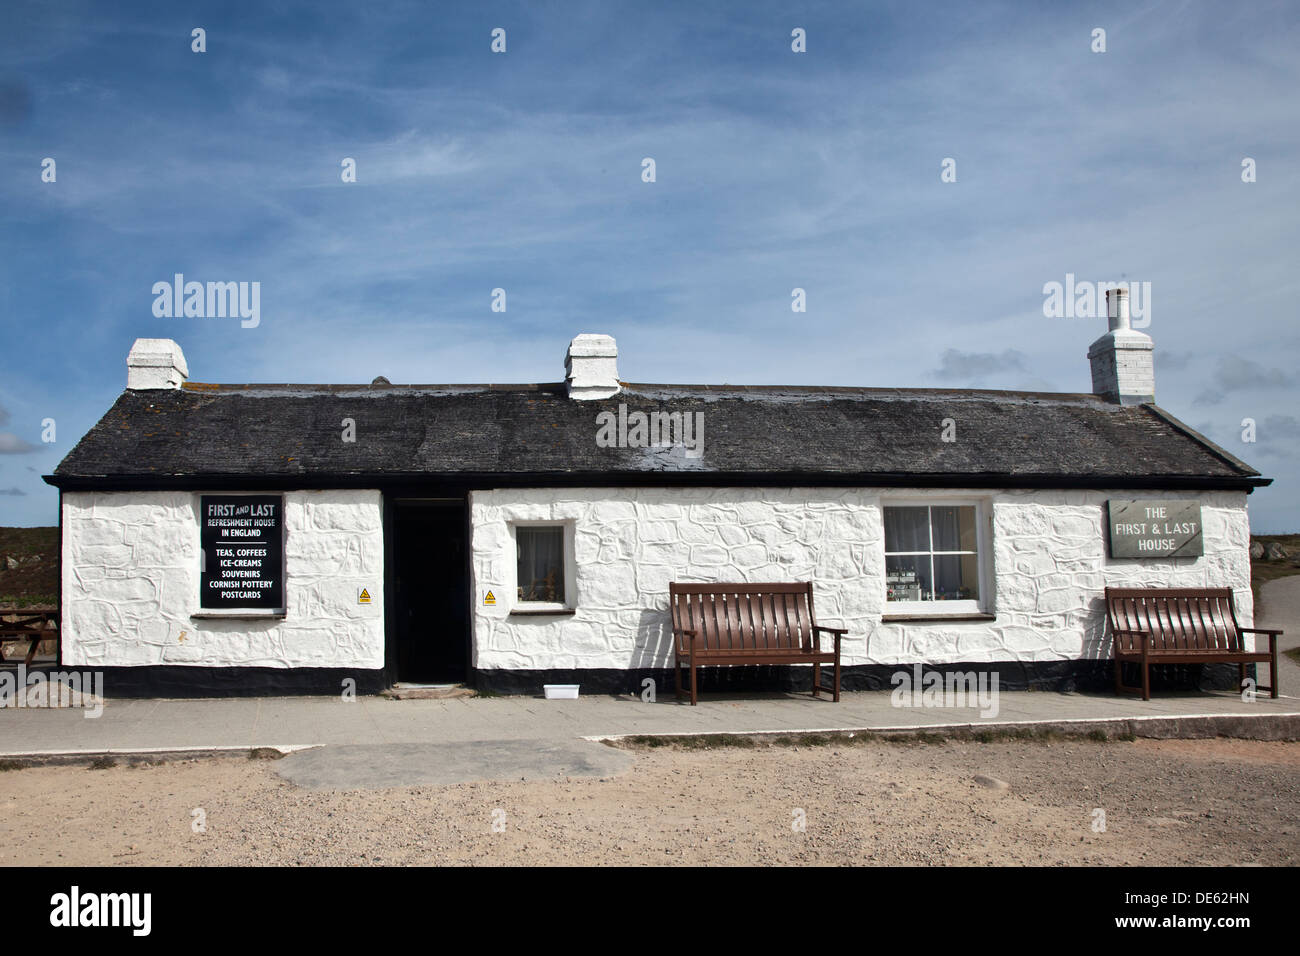 La prima e ultima casa ristorante, bar e negozio di articoli da regalo a Lands End Cornwall Foto Stock